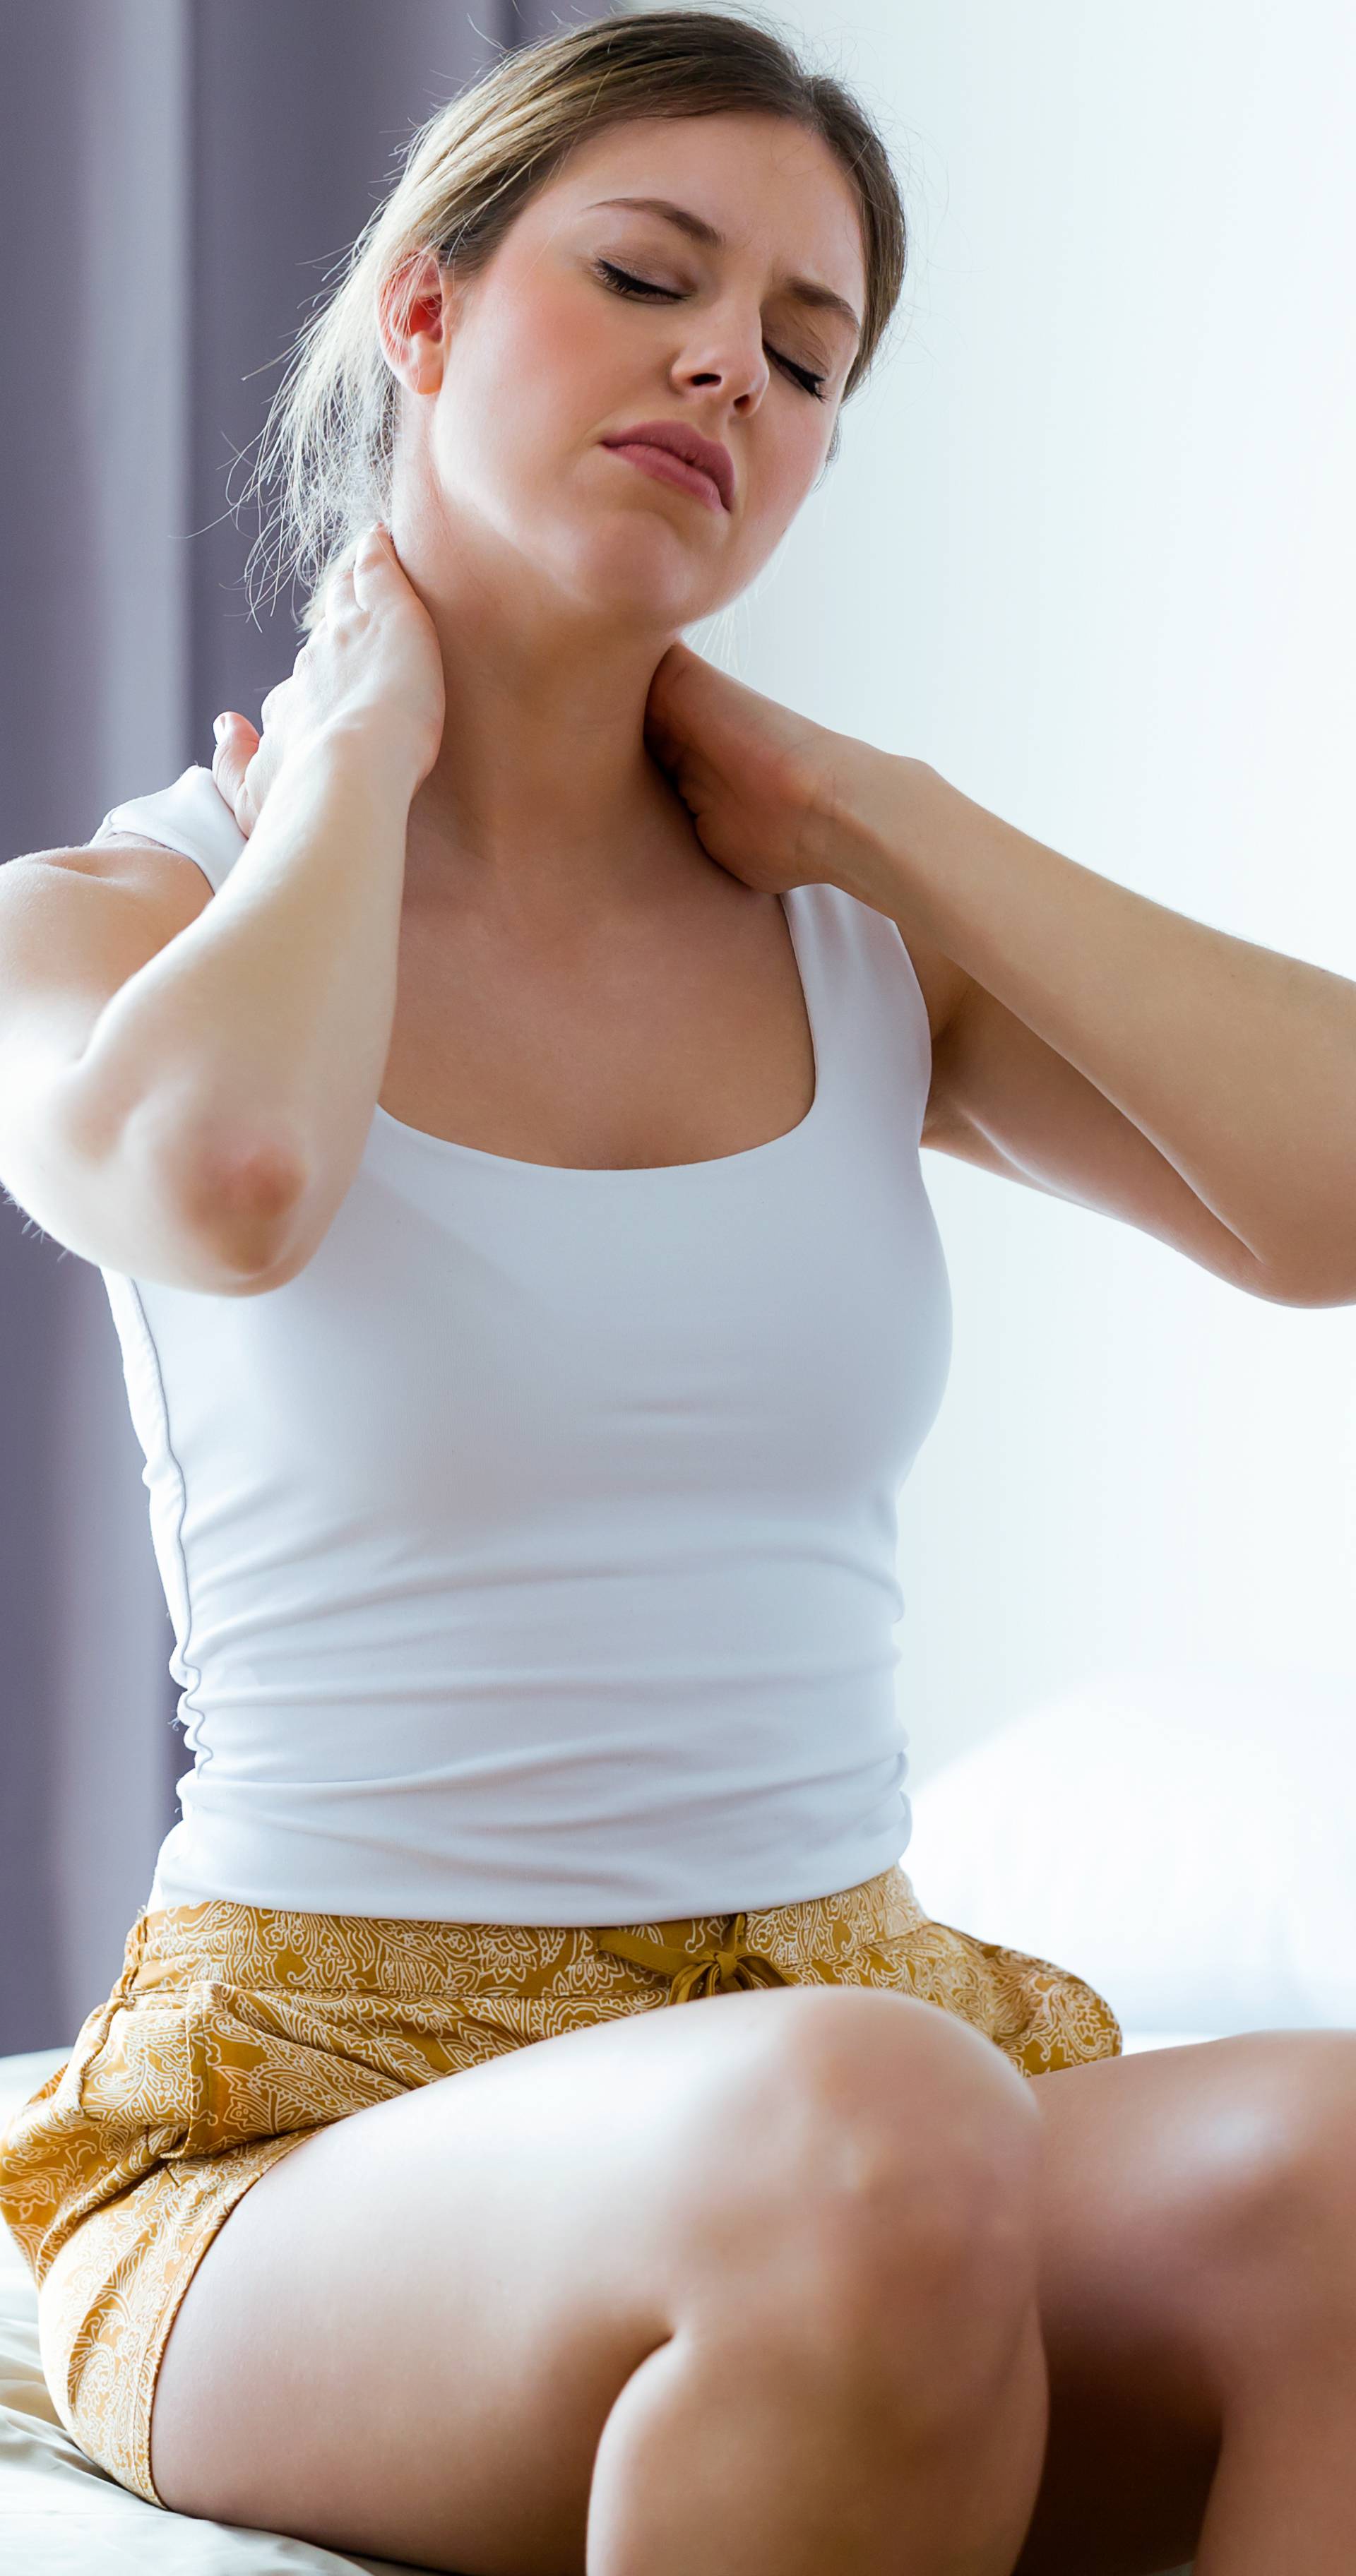 Tri vrste boli u vratu: Zašto se javlja i kako si možete olakšati